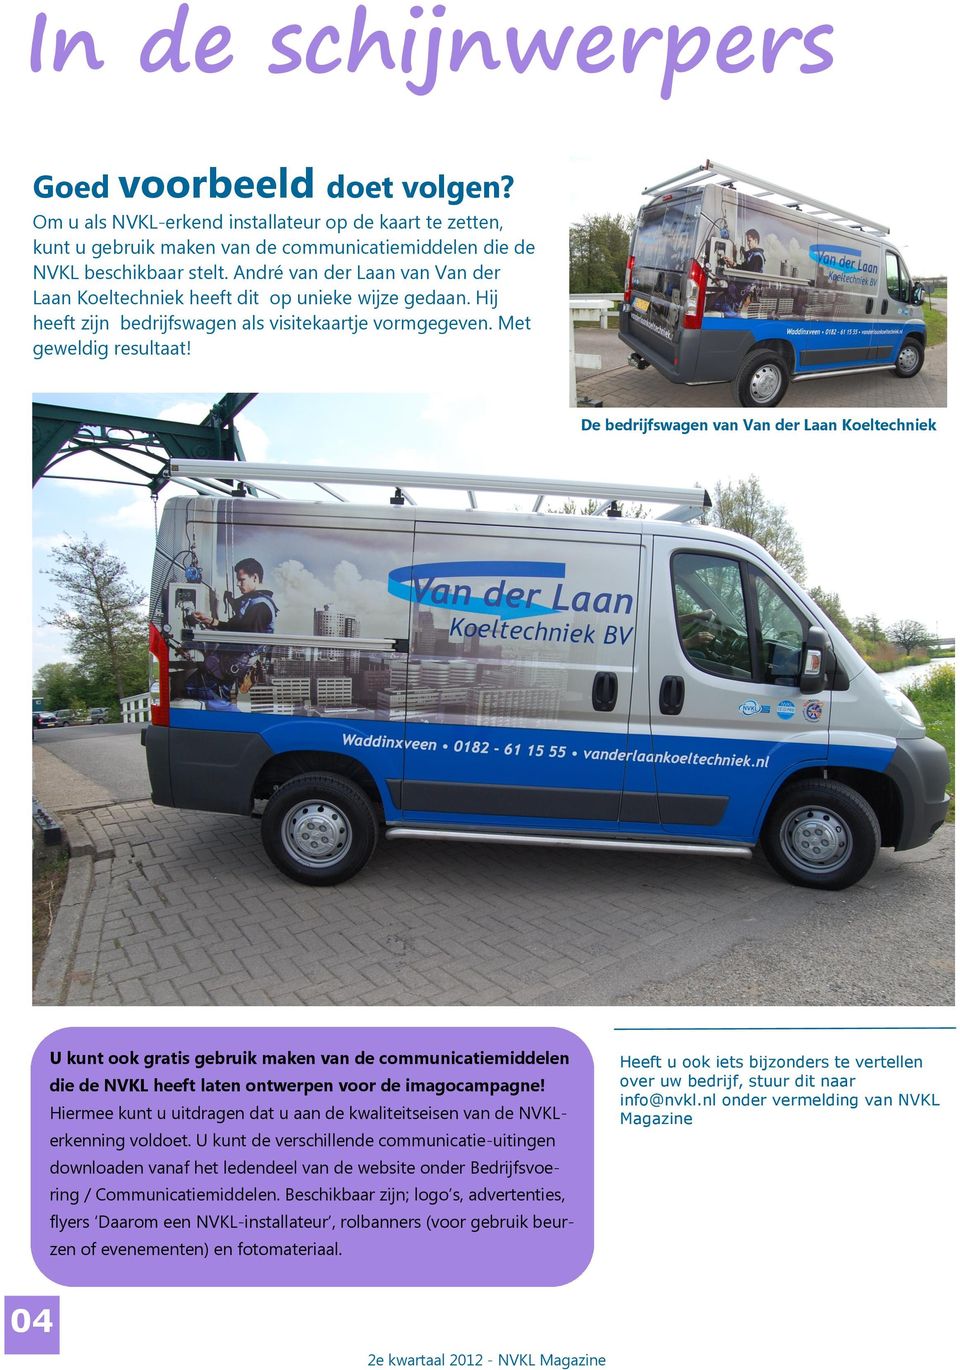 De bedrijfswagen van Van der Laan Koeltechniek U kunt ook gratis gebruik maken van de communicatiemiddelen die de NVKL heeft laten ontwerpen voor de imagocampagne!